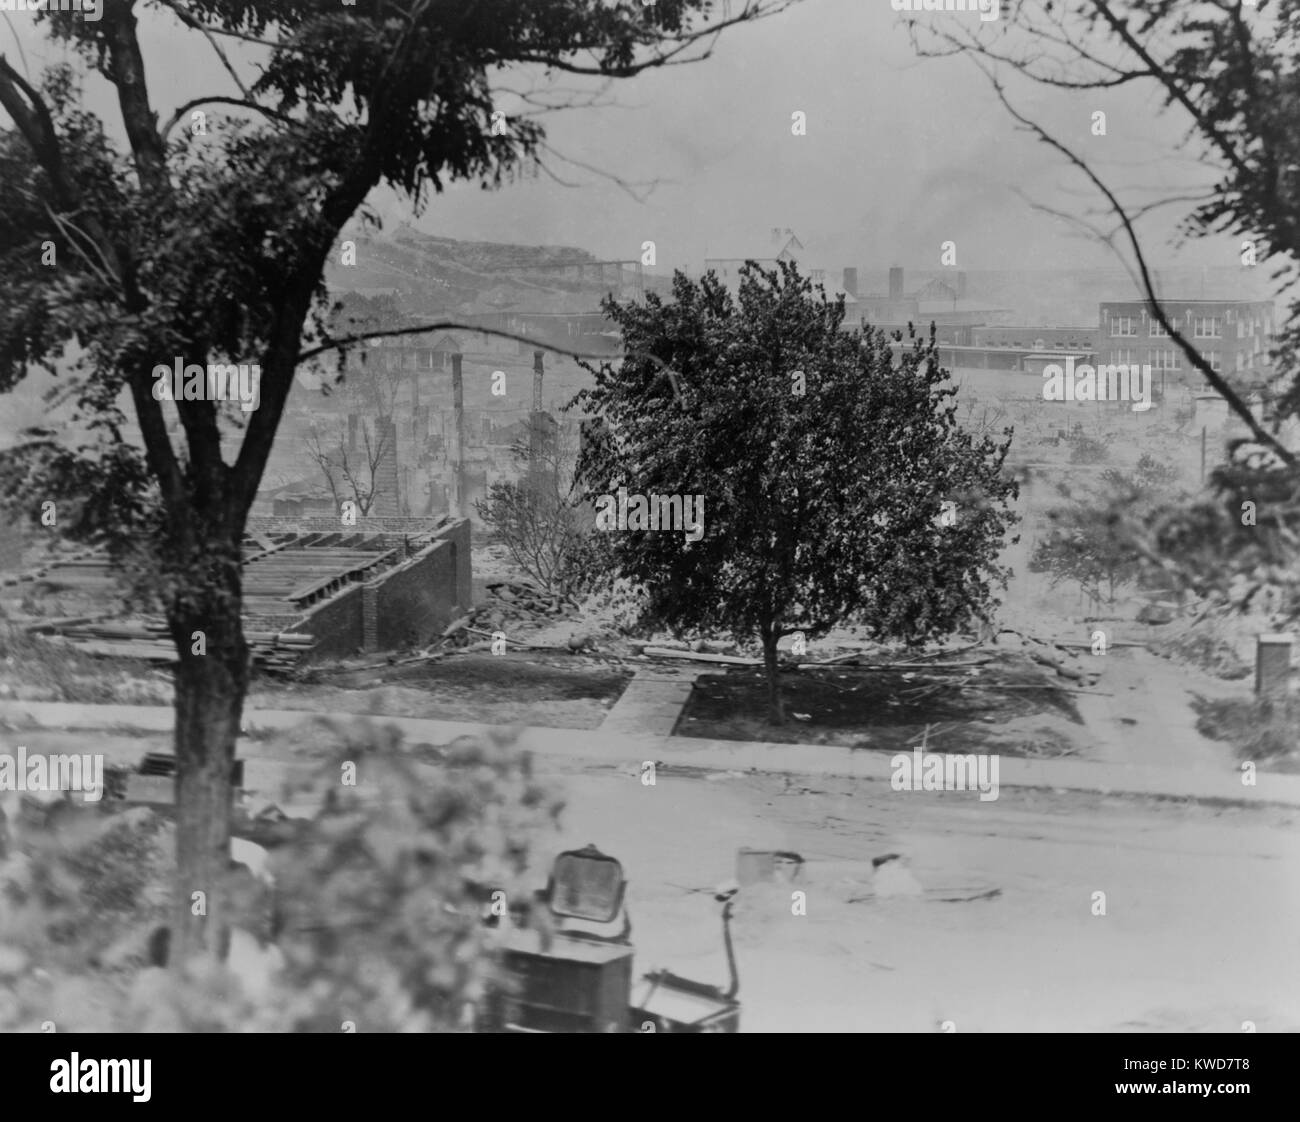 Le macerie delle case di African American quartiere di Greenwood in Tulsa, dopo la gara di sommossa. Il focolaio di corsa urbana tumulti da 1917-1923, Tulsa è stato il peggiore, distruggendo oltre un migliaio di case e edifici comunitari dal 31 maggio al 1 giugno 1921. (BSLOC 2015 16 156) Foto Stock